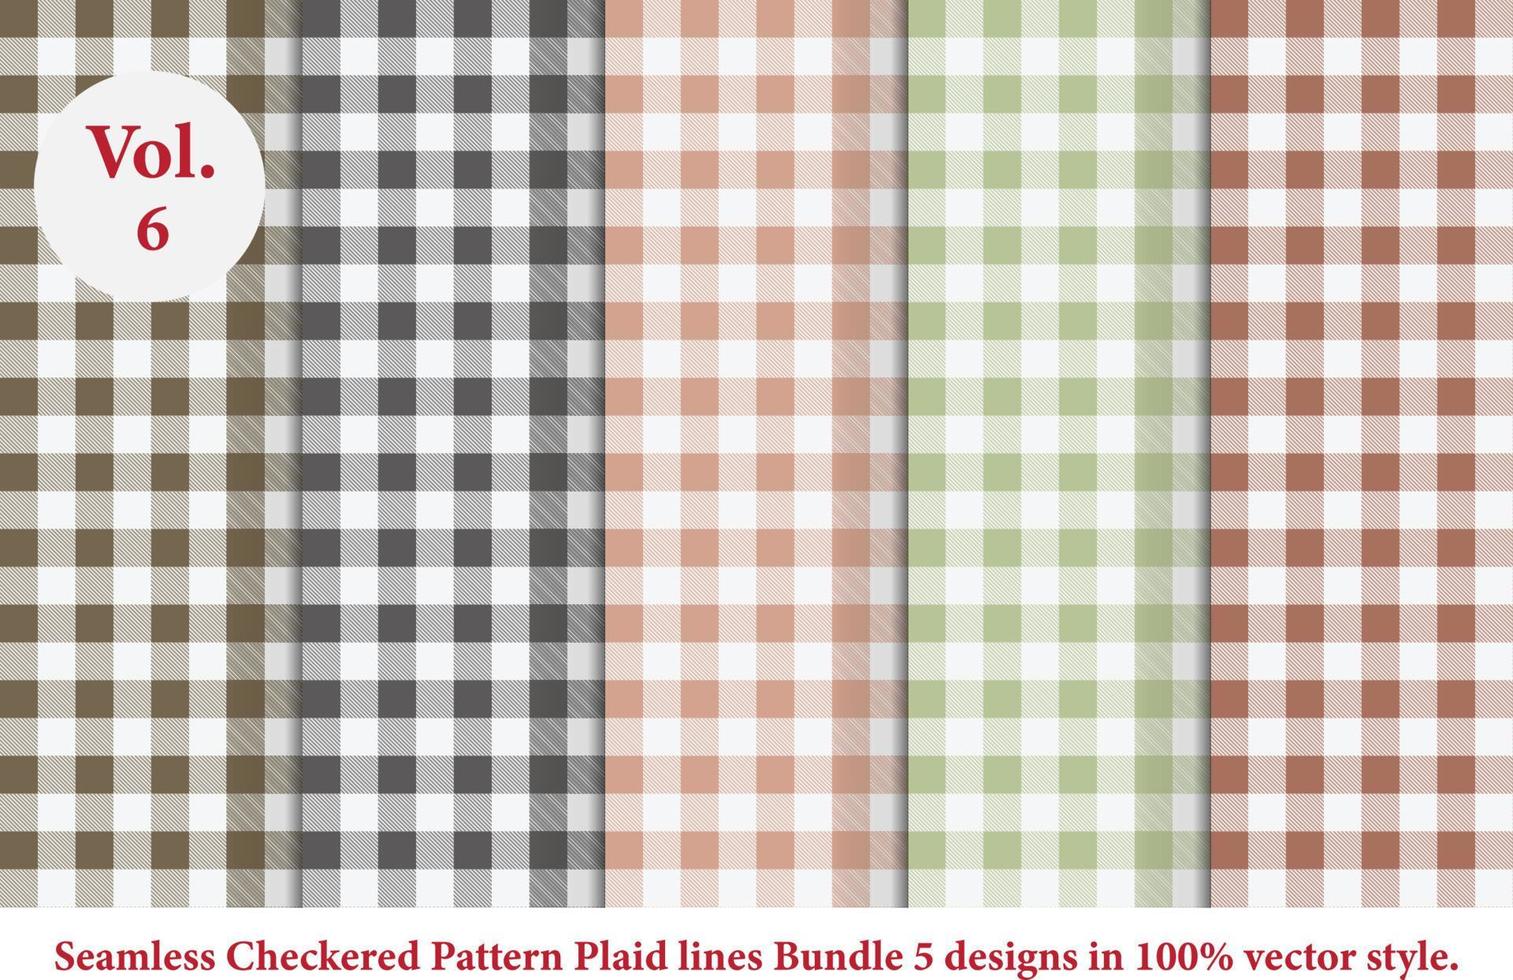 padrão de linhas xadrez, padrão quadriculado, vetor argyle, padrão tartan em vetor de estilo retrô